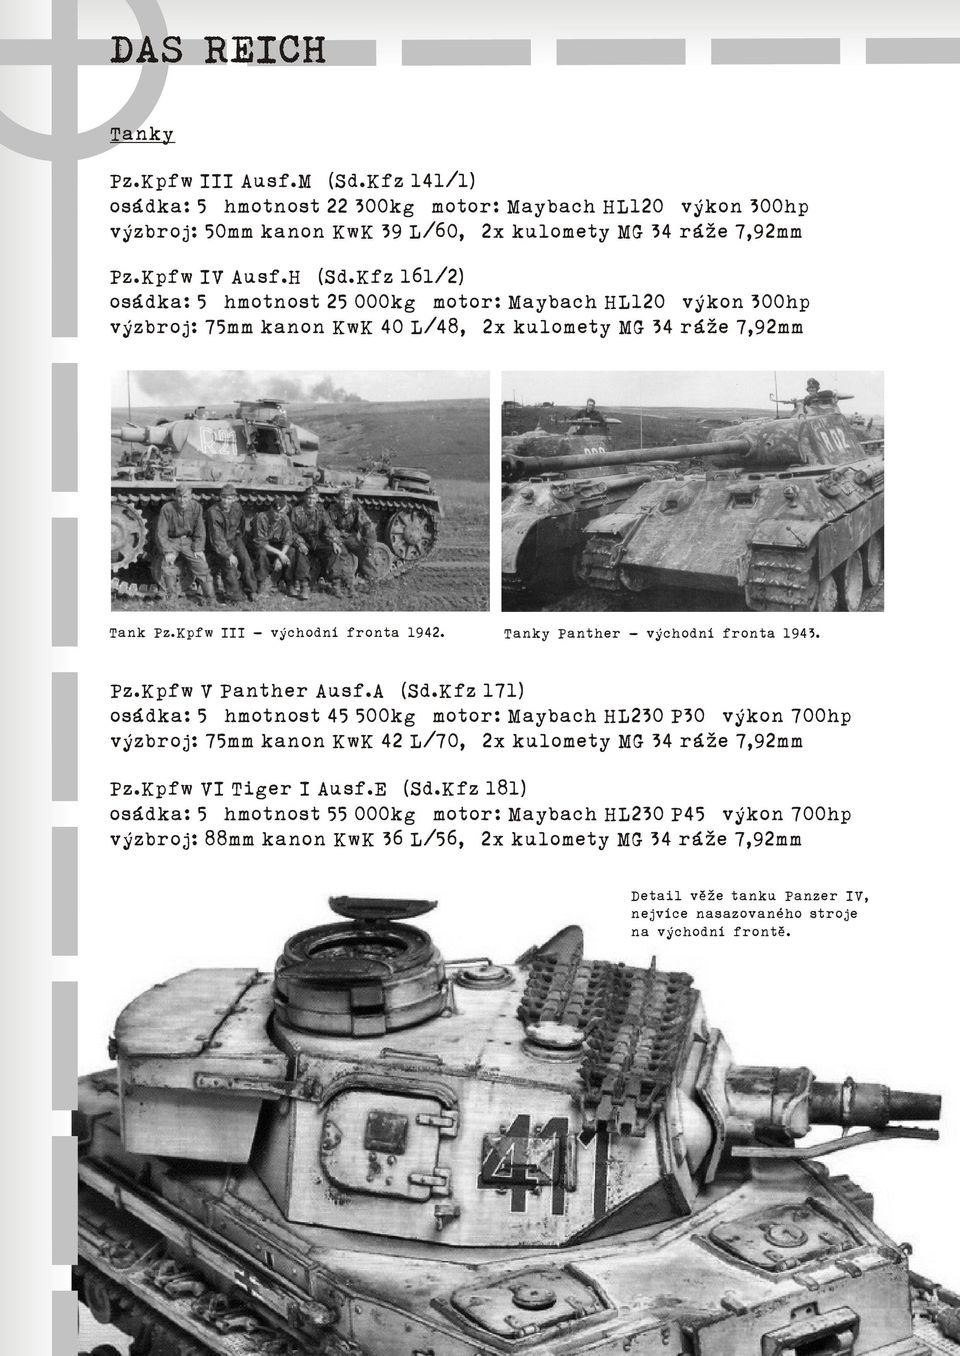 Tanky Panther - východní fronta 1943. Pz.Kpfw V Panther Ausf.A (Sd.